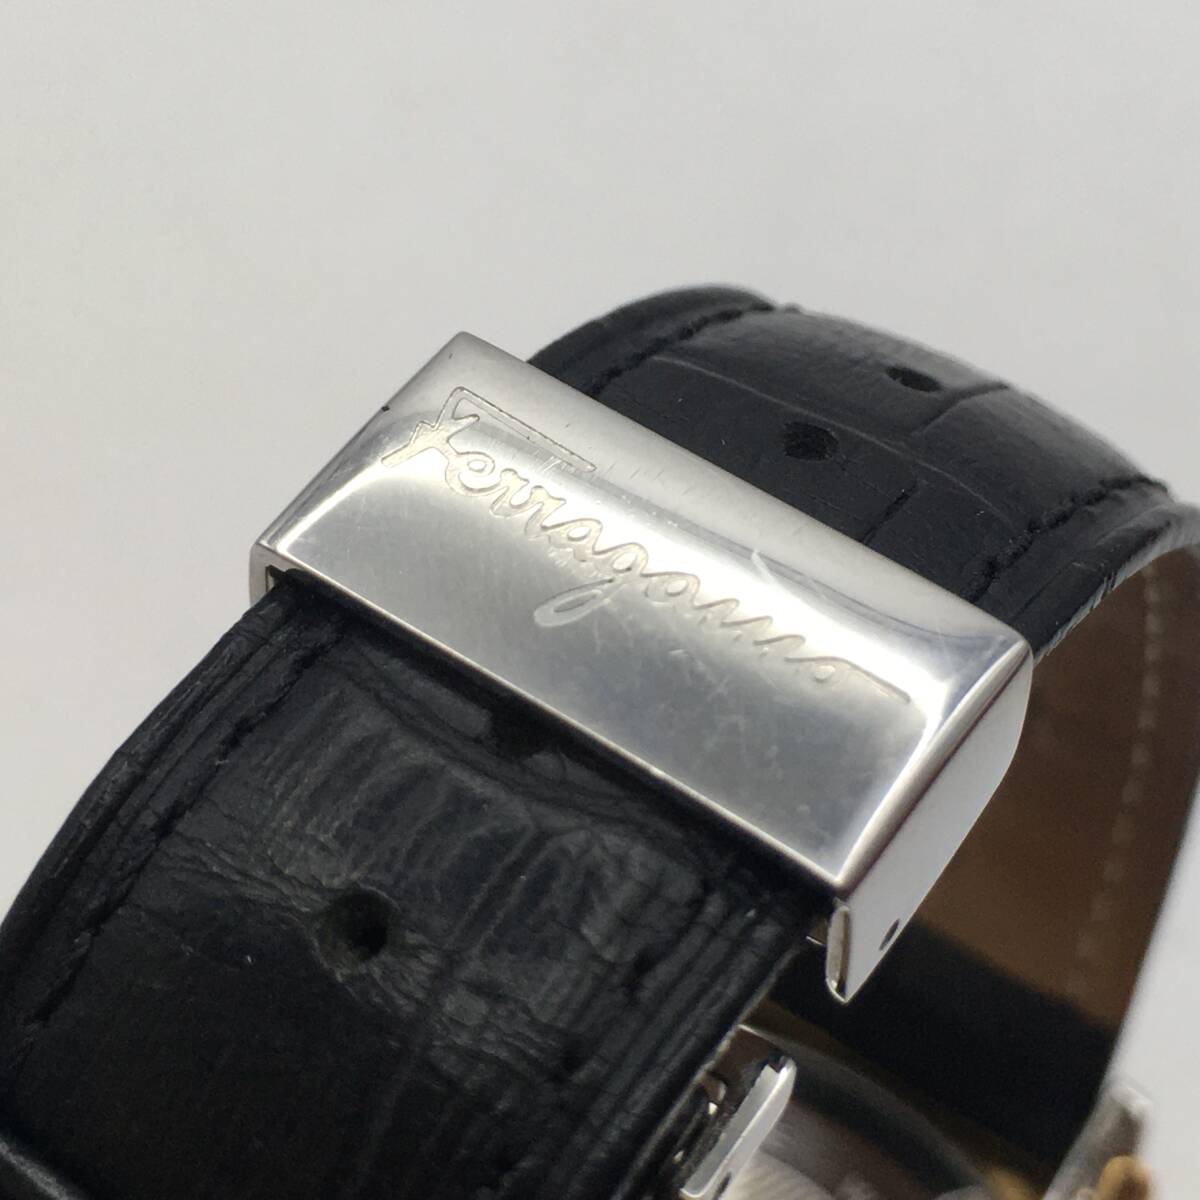 05/10X1 Salvatore Ferragamo/ Salvatore Ferragamo 3 hands Date Date men's quartz wristwatch leather belt accessory equipped 